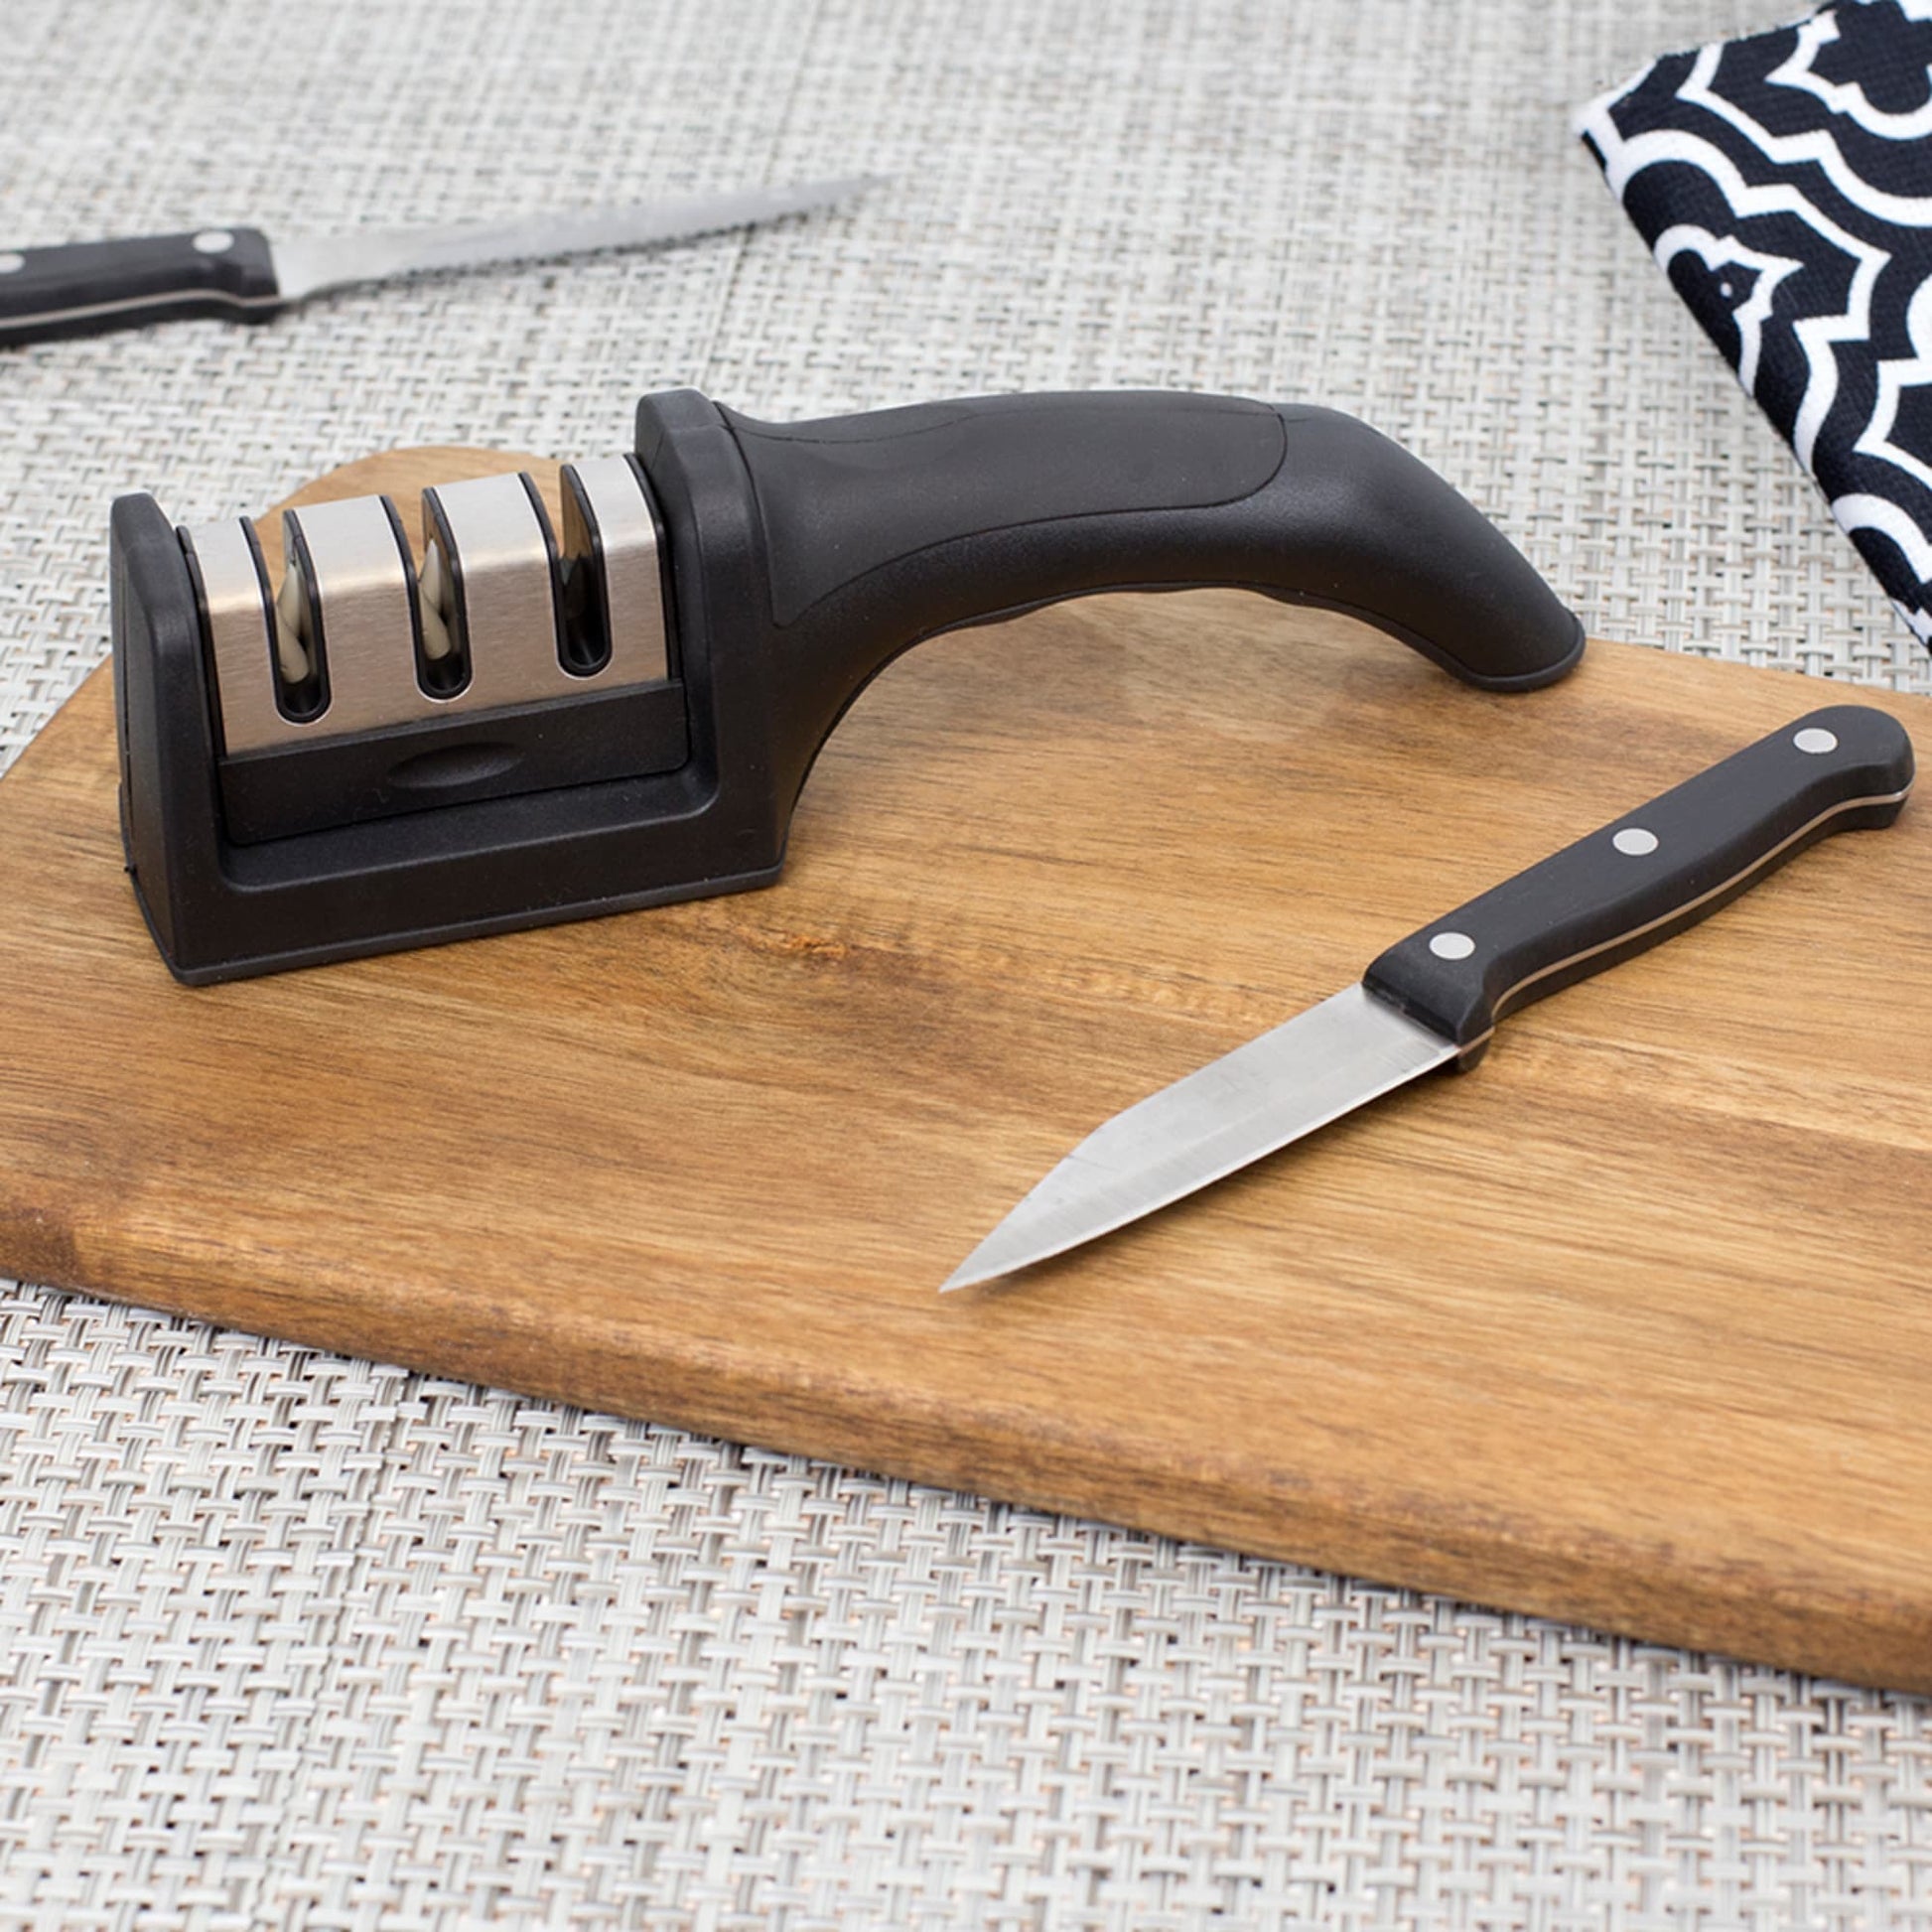 Kijor Home 3-Stage Knife Sharpener with Scissor Sharpener and Cut